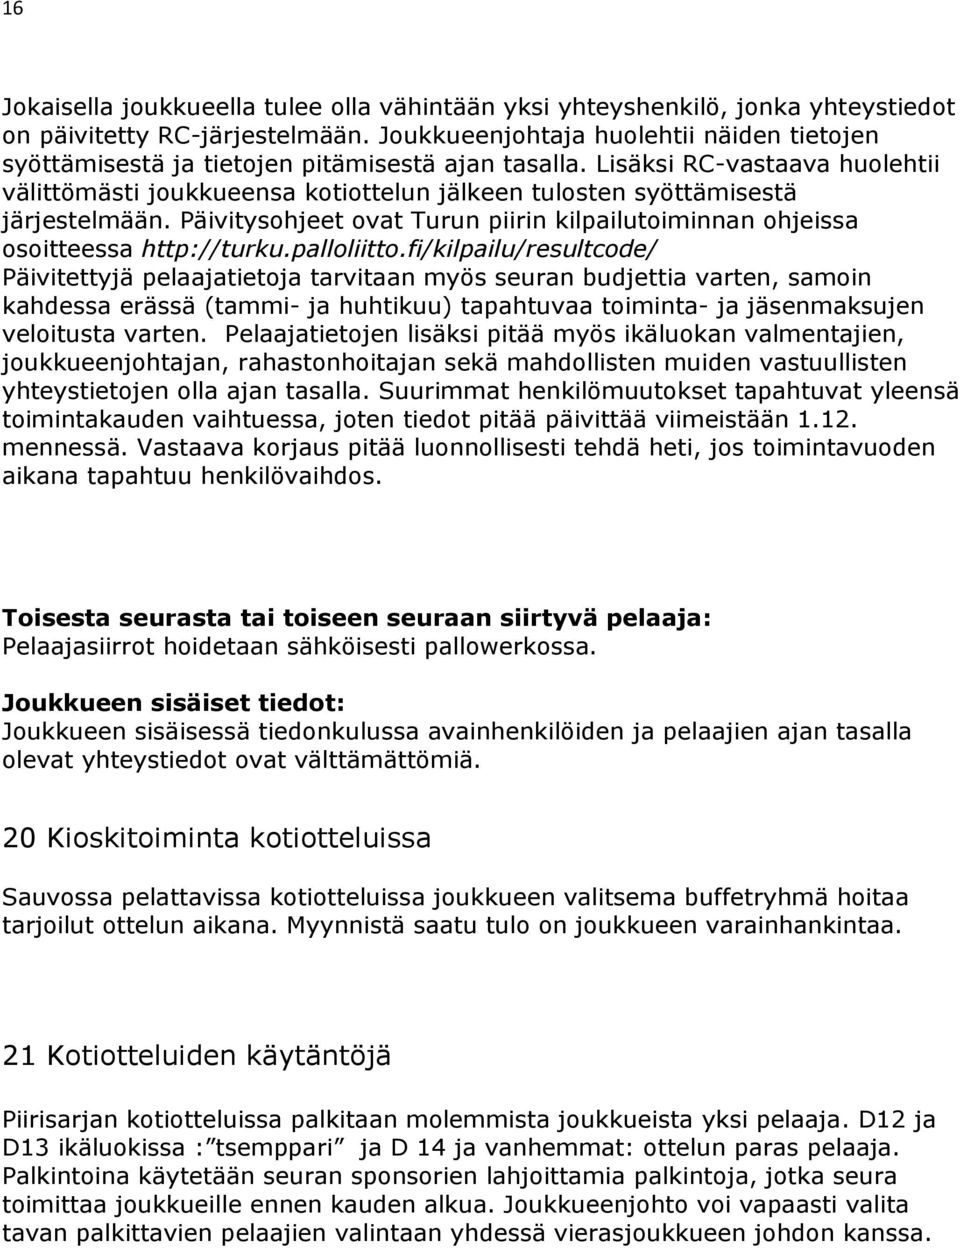 Lisäksi RC-vastaava huolehtii välittömästi joukkueensa kotiottelun jälkeen tulosten syöttämisestä järjestelmään. Päivitysohjeet ovat Turun piirin kilpailutoiminnan ohjeissa osoitteessa http://turku.